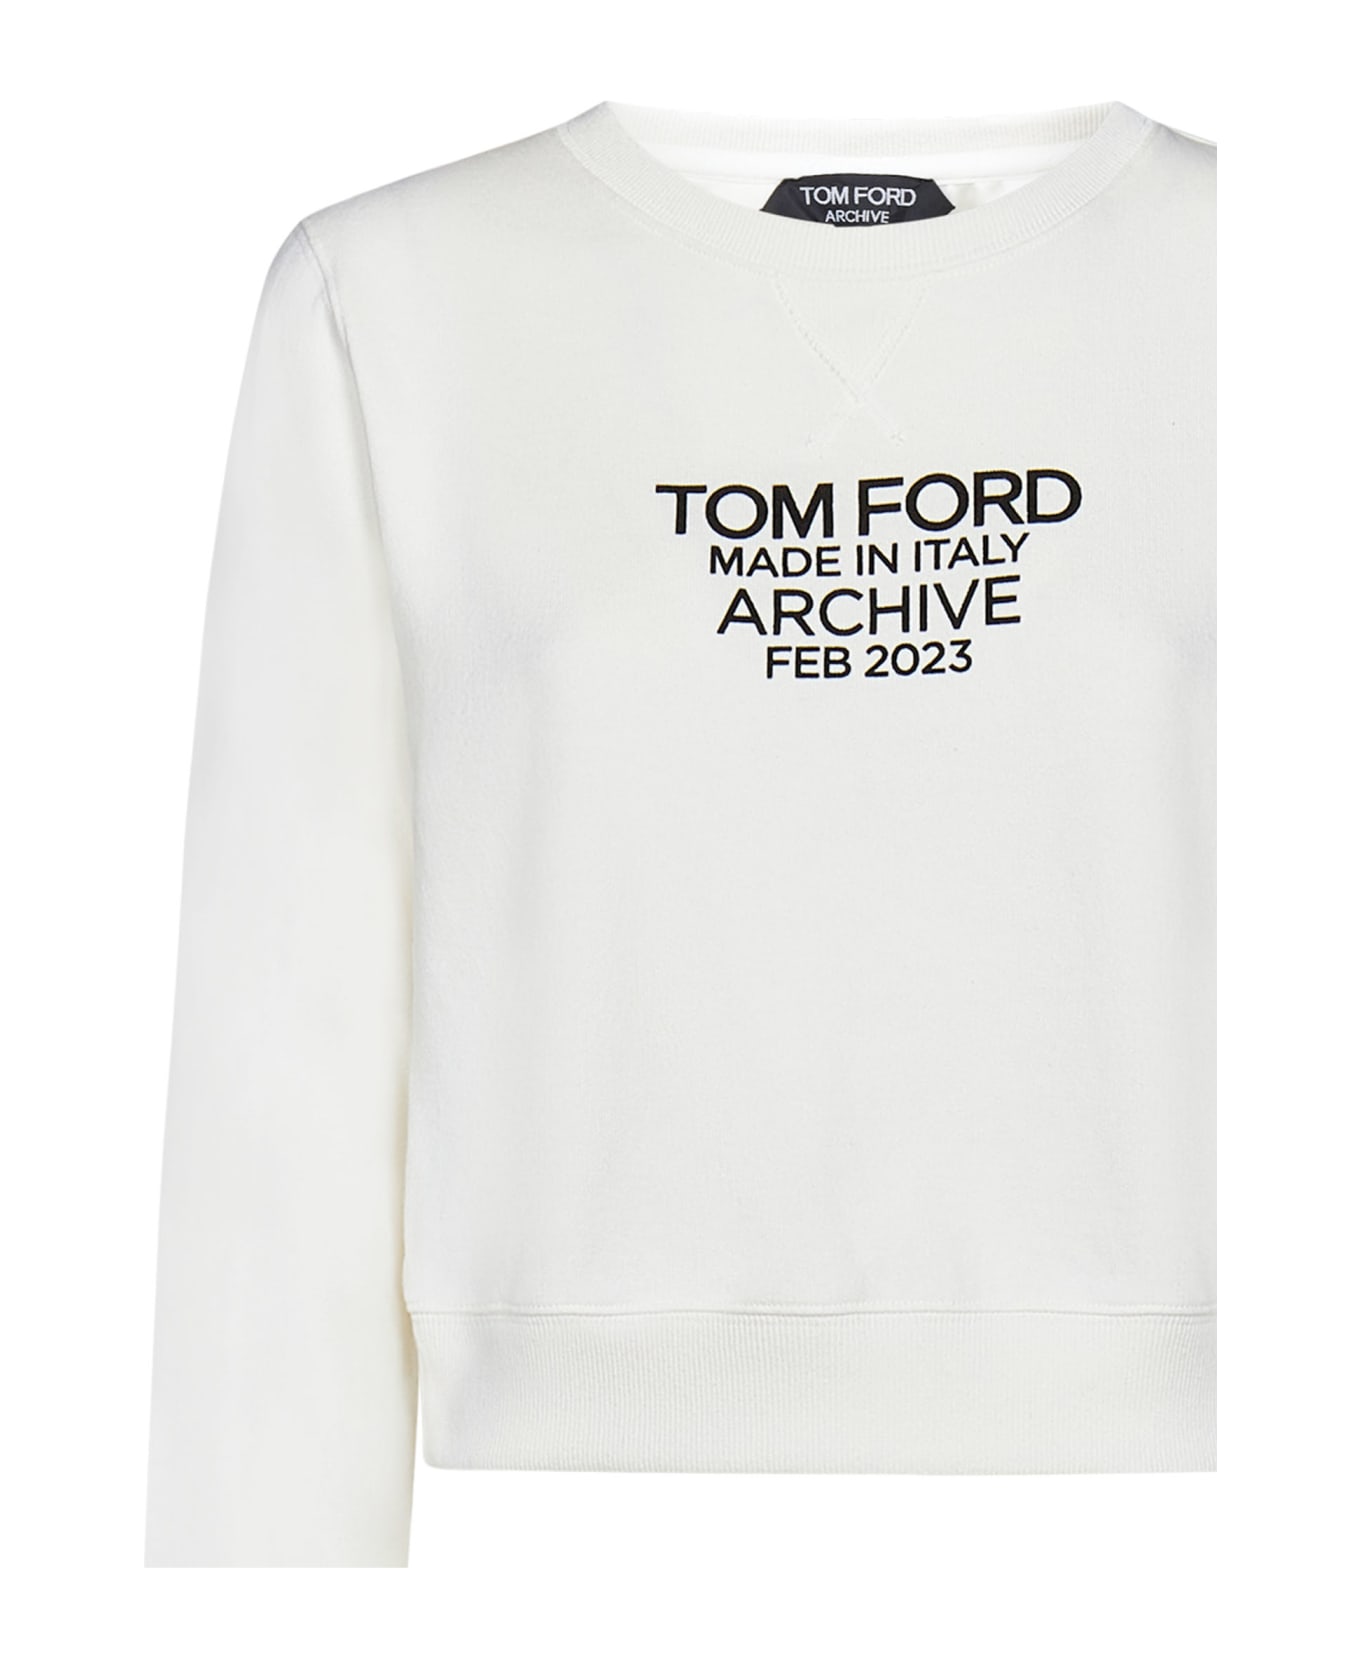 Tom Ford Sweatshirt - White フリース